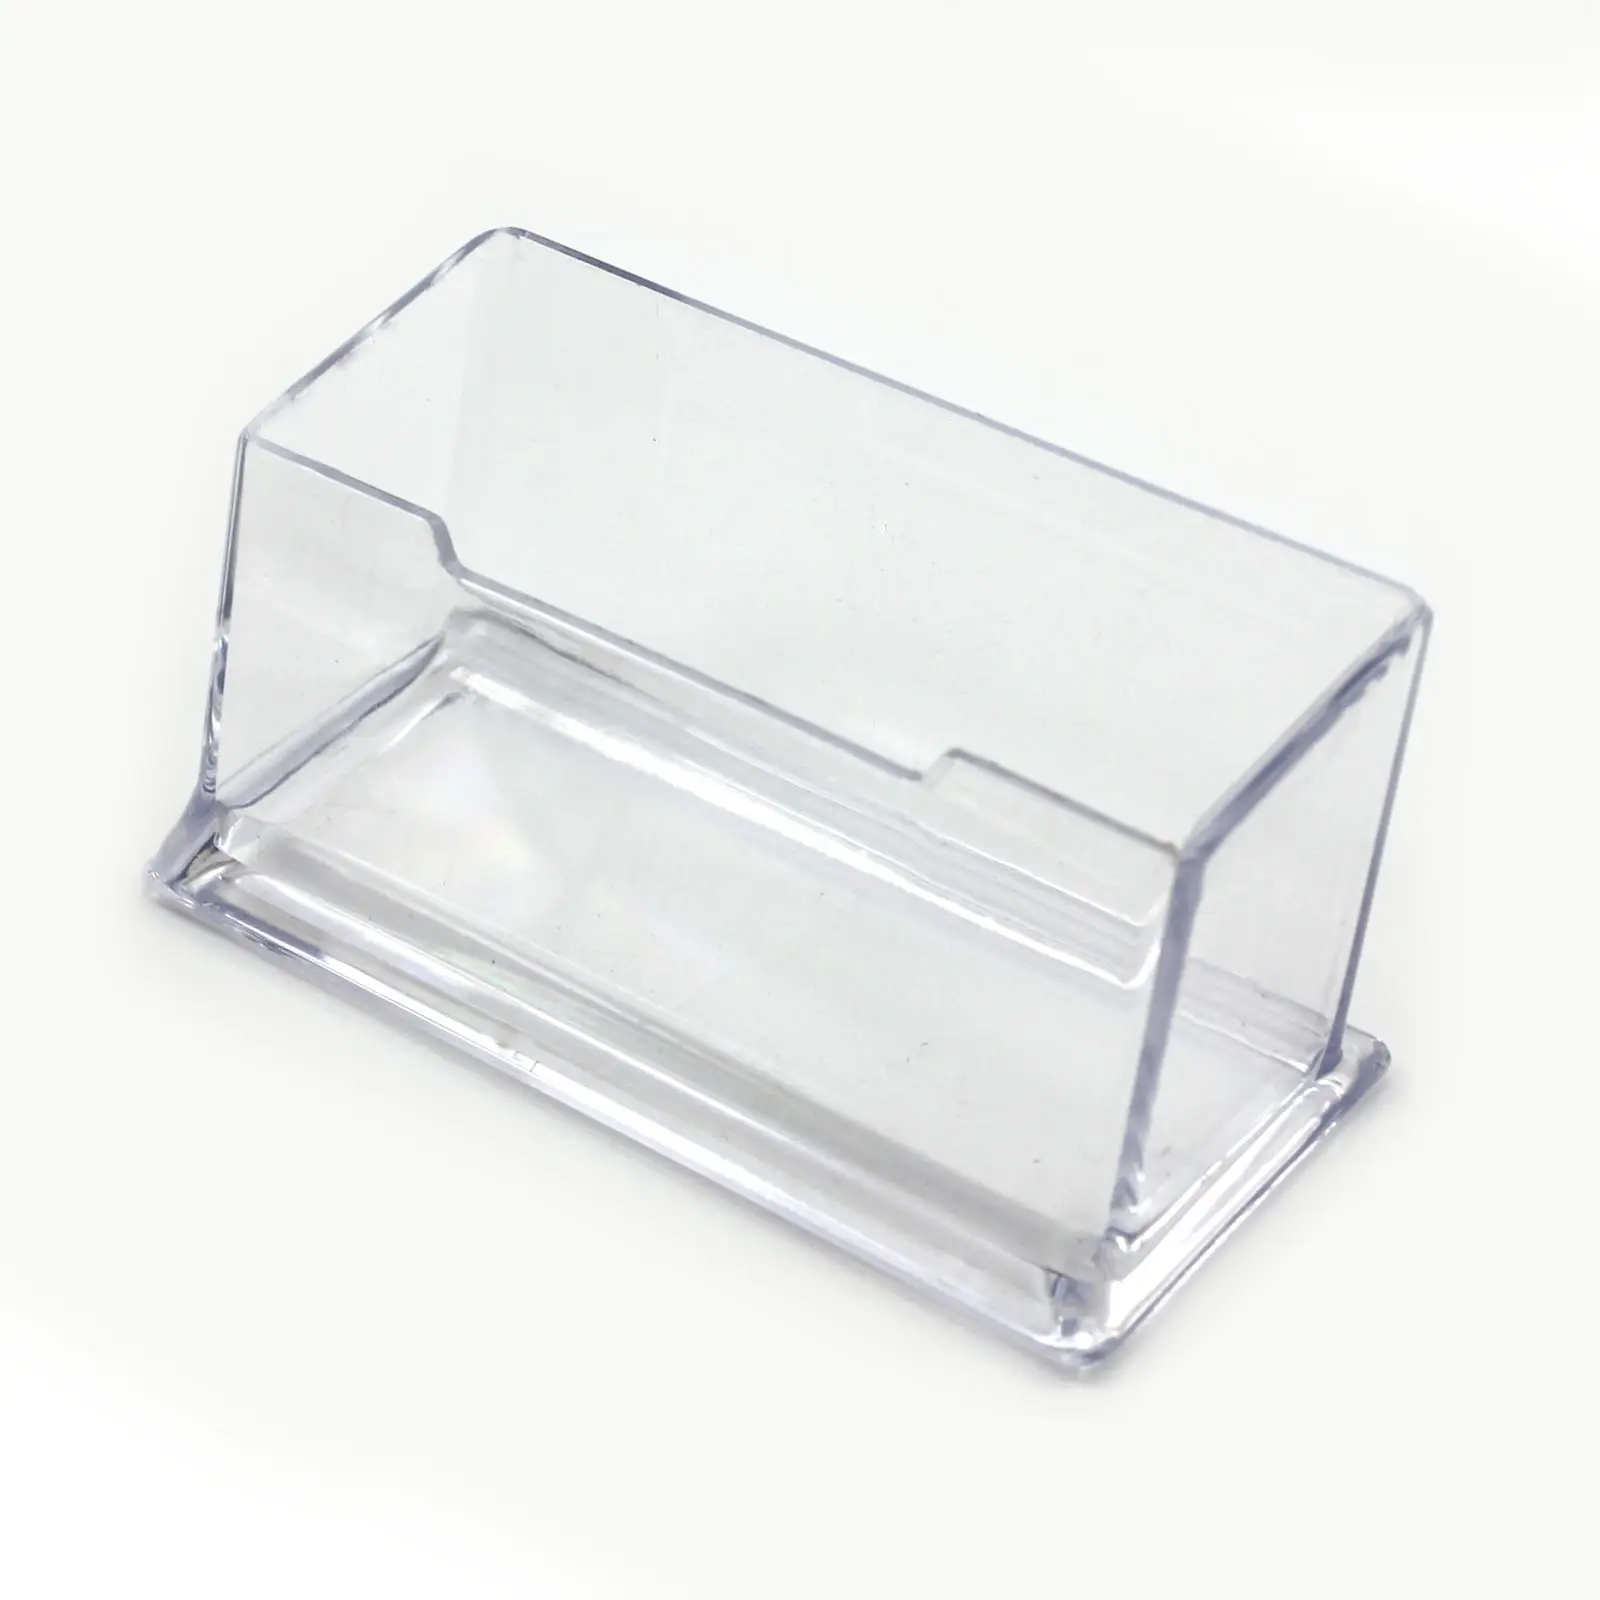 Nueva caja de estante de escritorio transparente, soporte de exhibición de almacenamiento, soporte de tarjeta de visita de escritorio transparente de plástico Acrílico